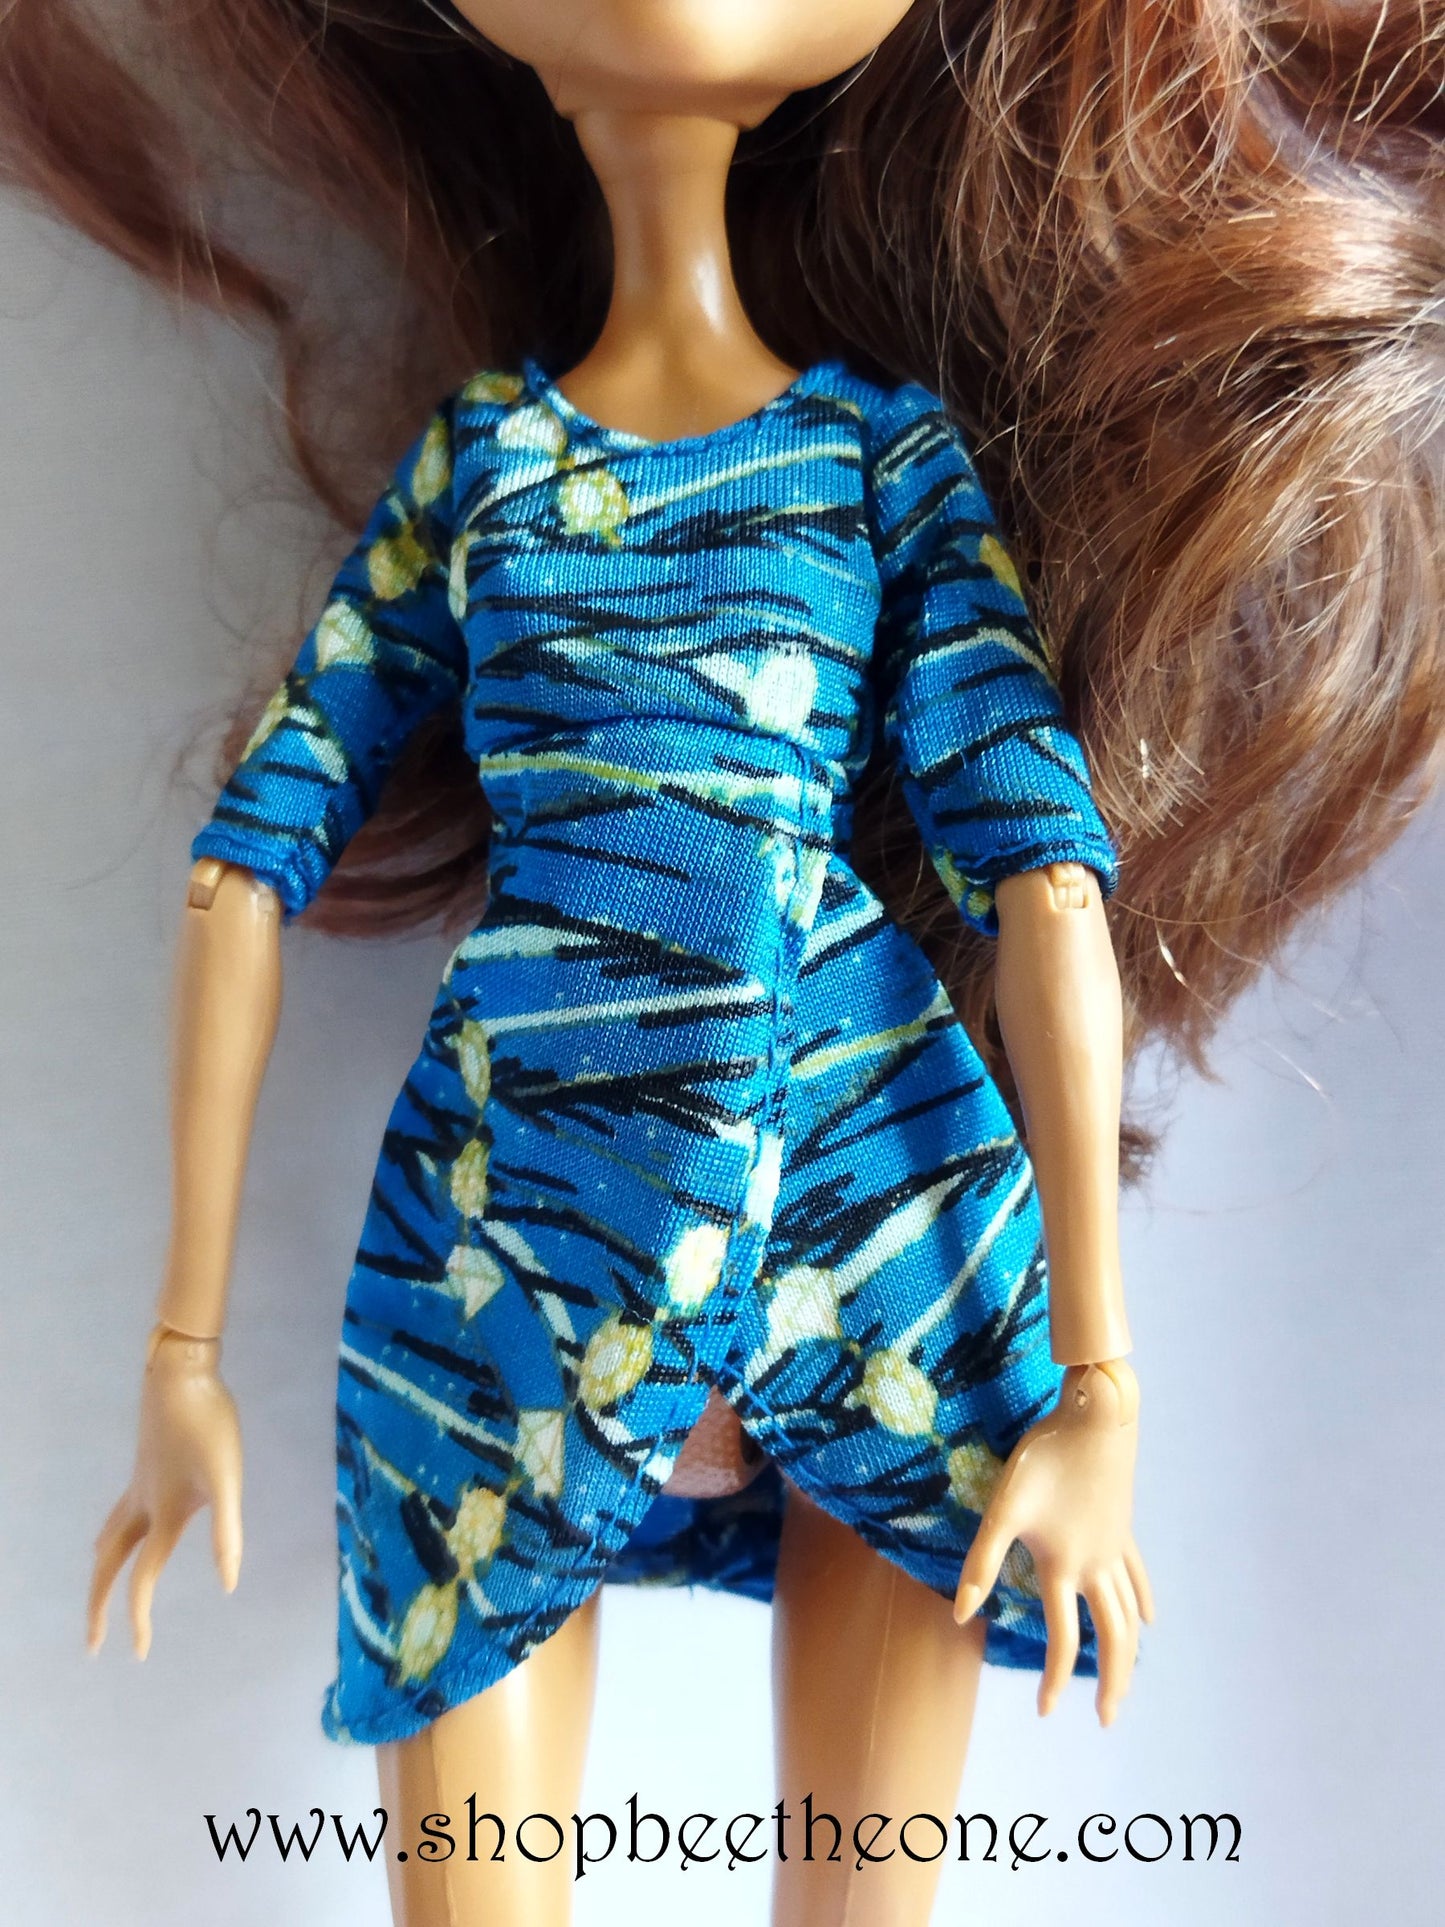 Cleo de Nile Picture Day - Mattel 2012 - Vêtement